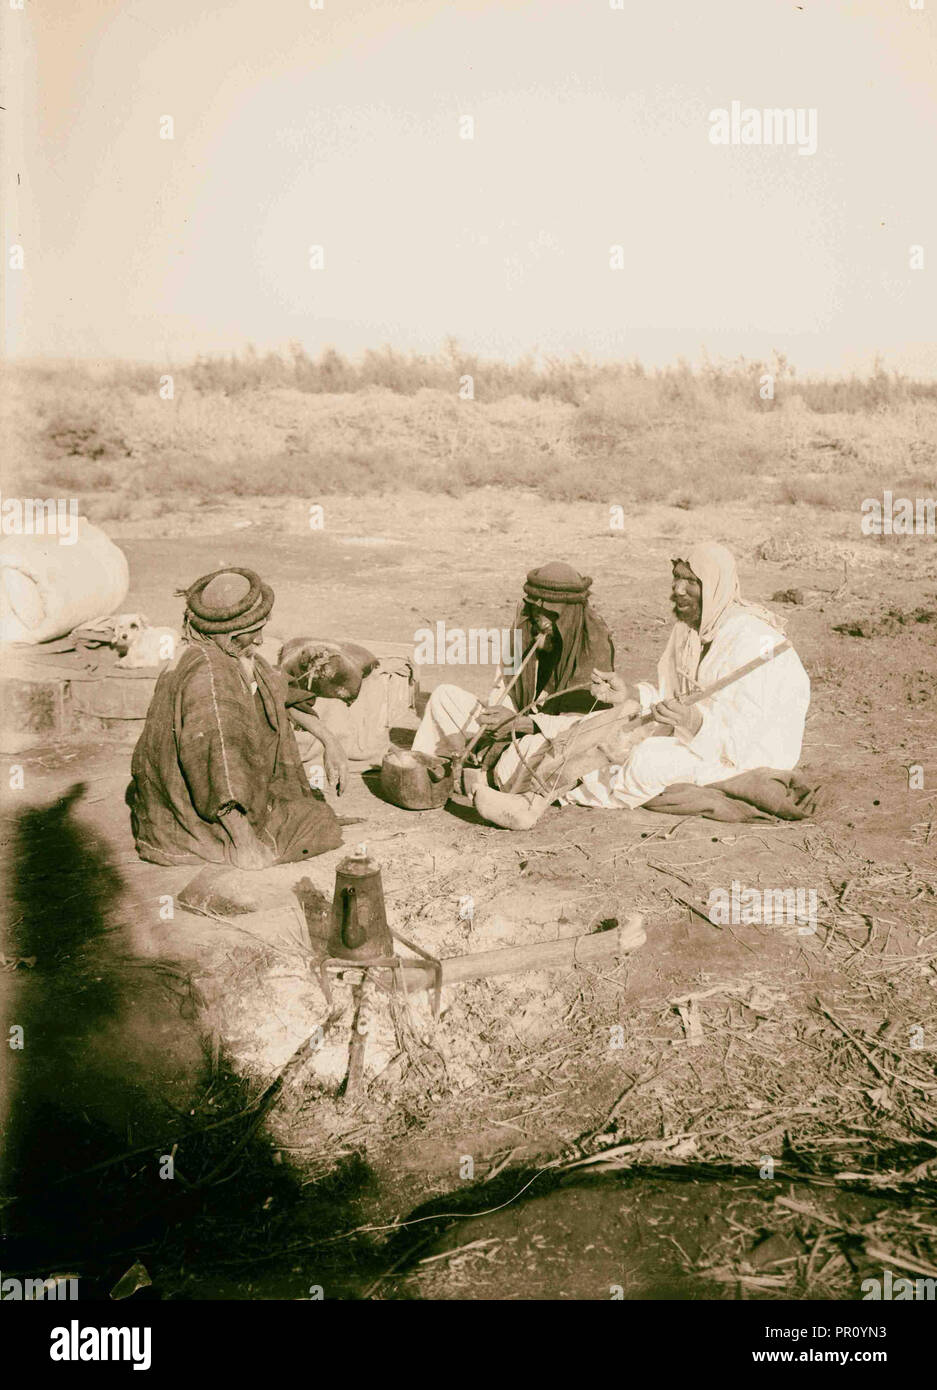 Bedouin Musiker 1900, die Beduinen sind eine Gruppierung von nomadisierenden arabischen Völker, die historisch die Wüstenregionen bewohnt haben Stockfoto